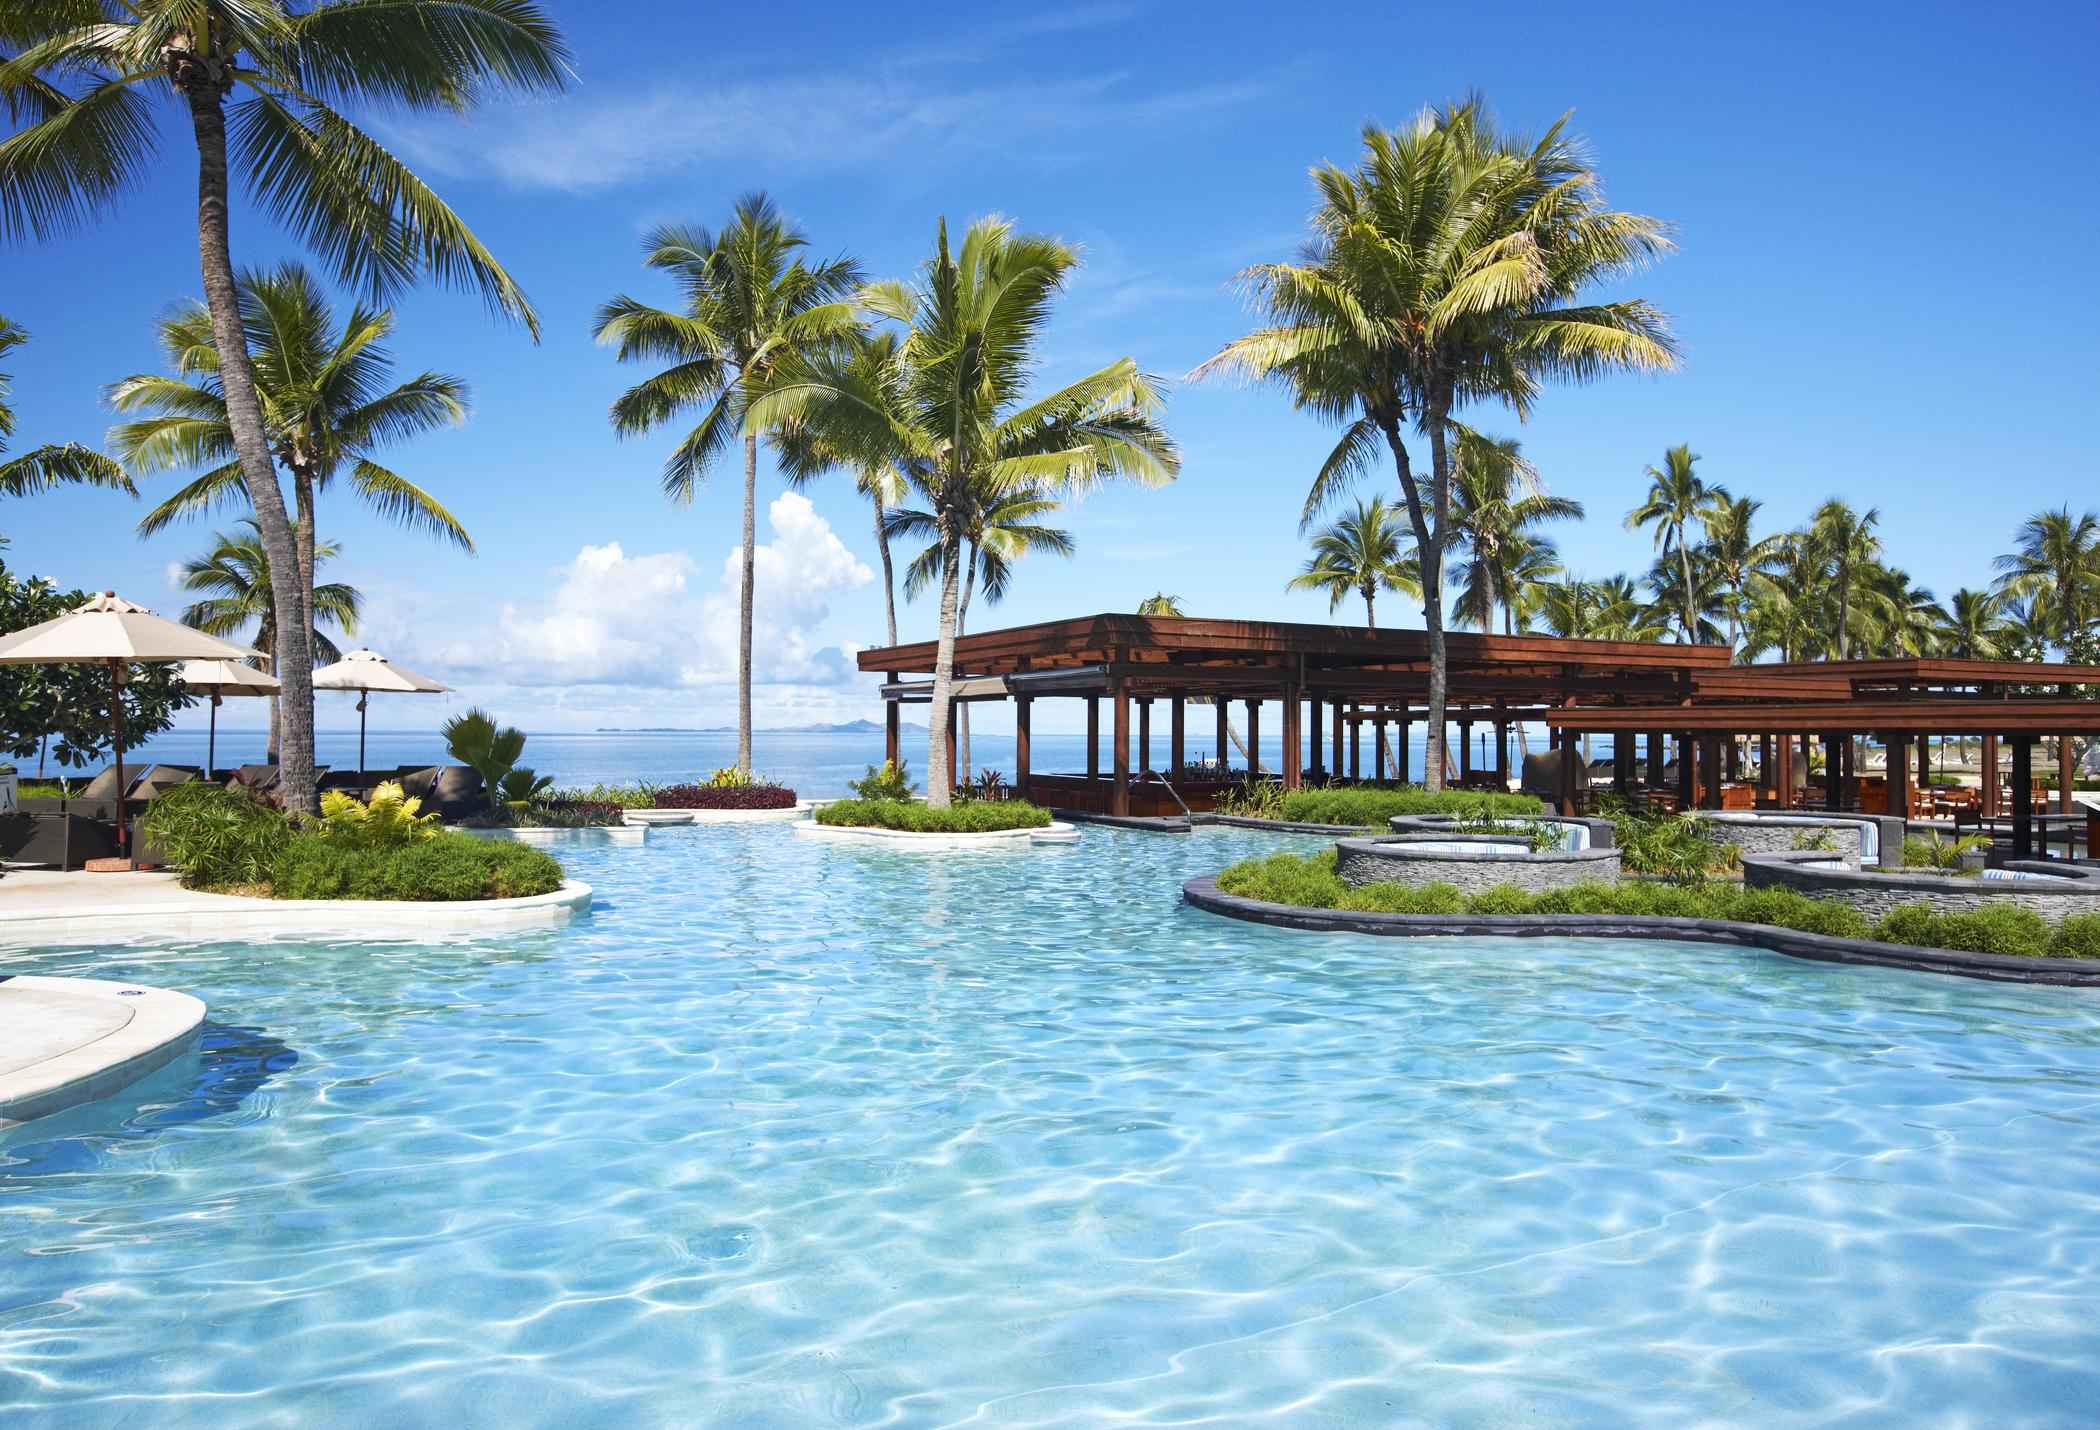 Resort Sheraton Fiji situado en la isla Denarau